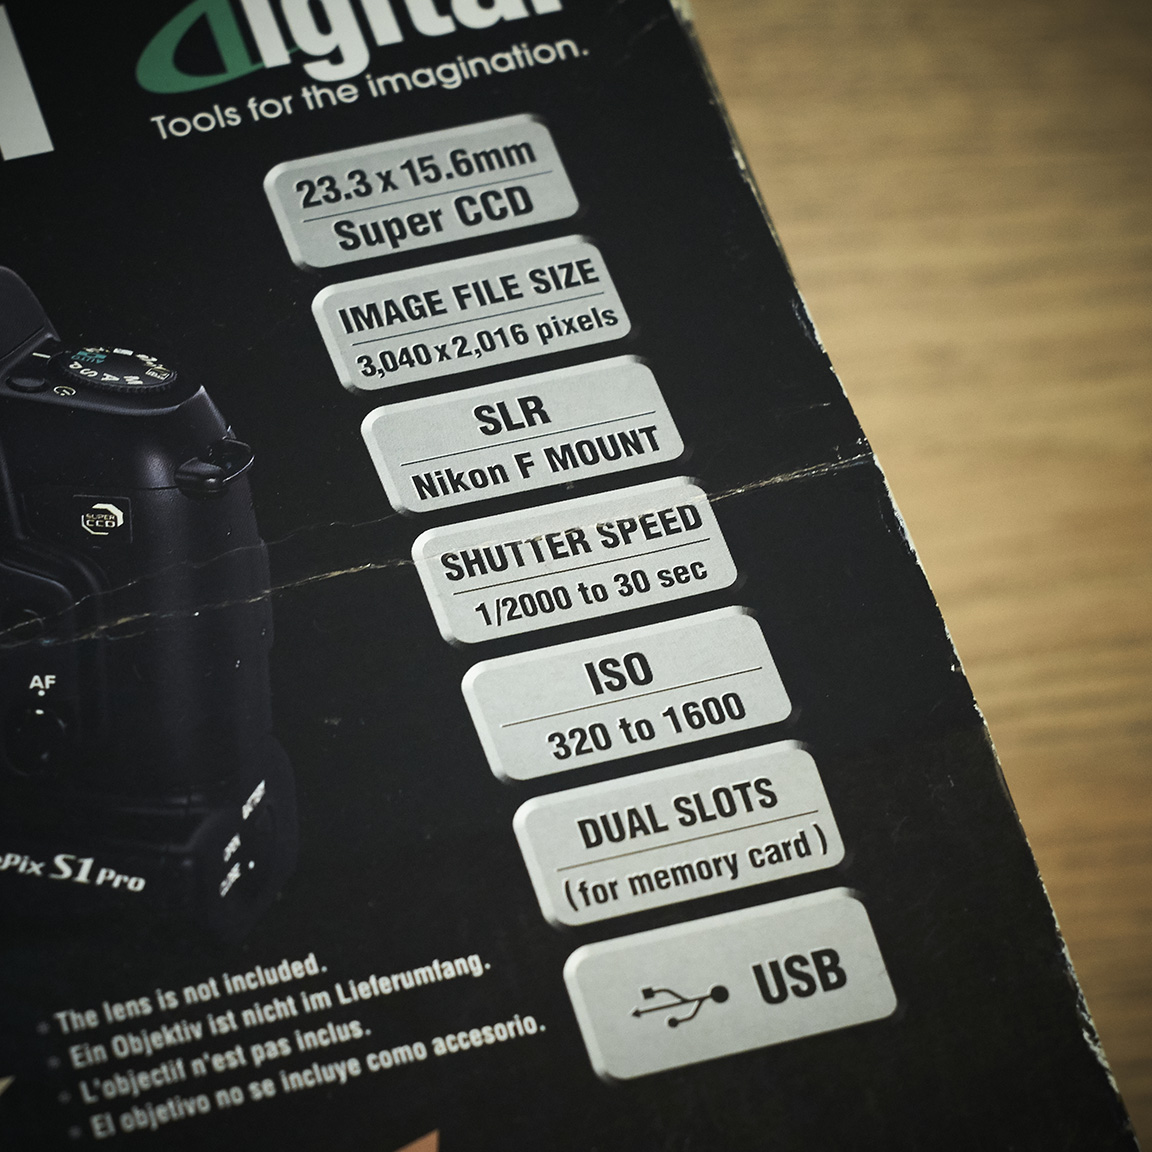 Fujifilm Finepix S1 Pro Camera Specifications